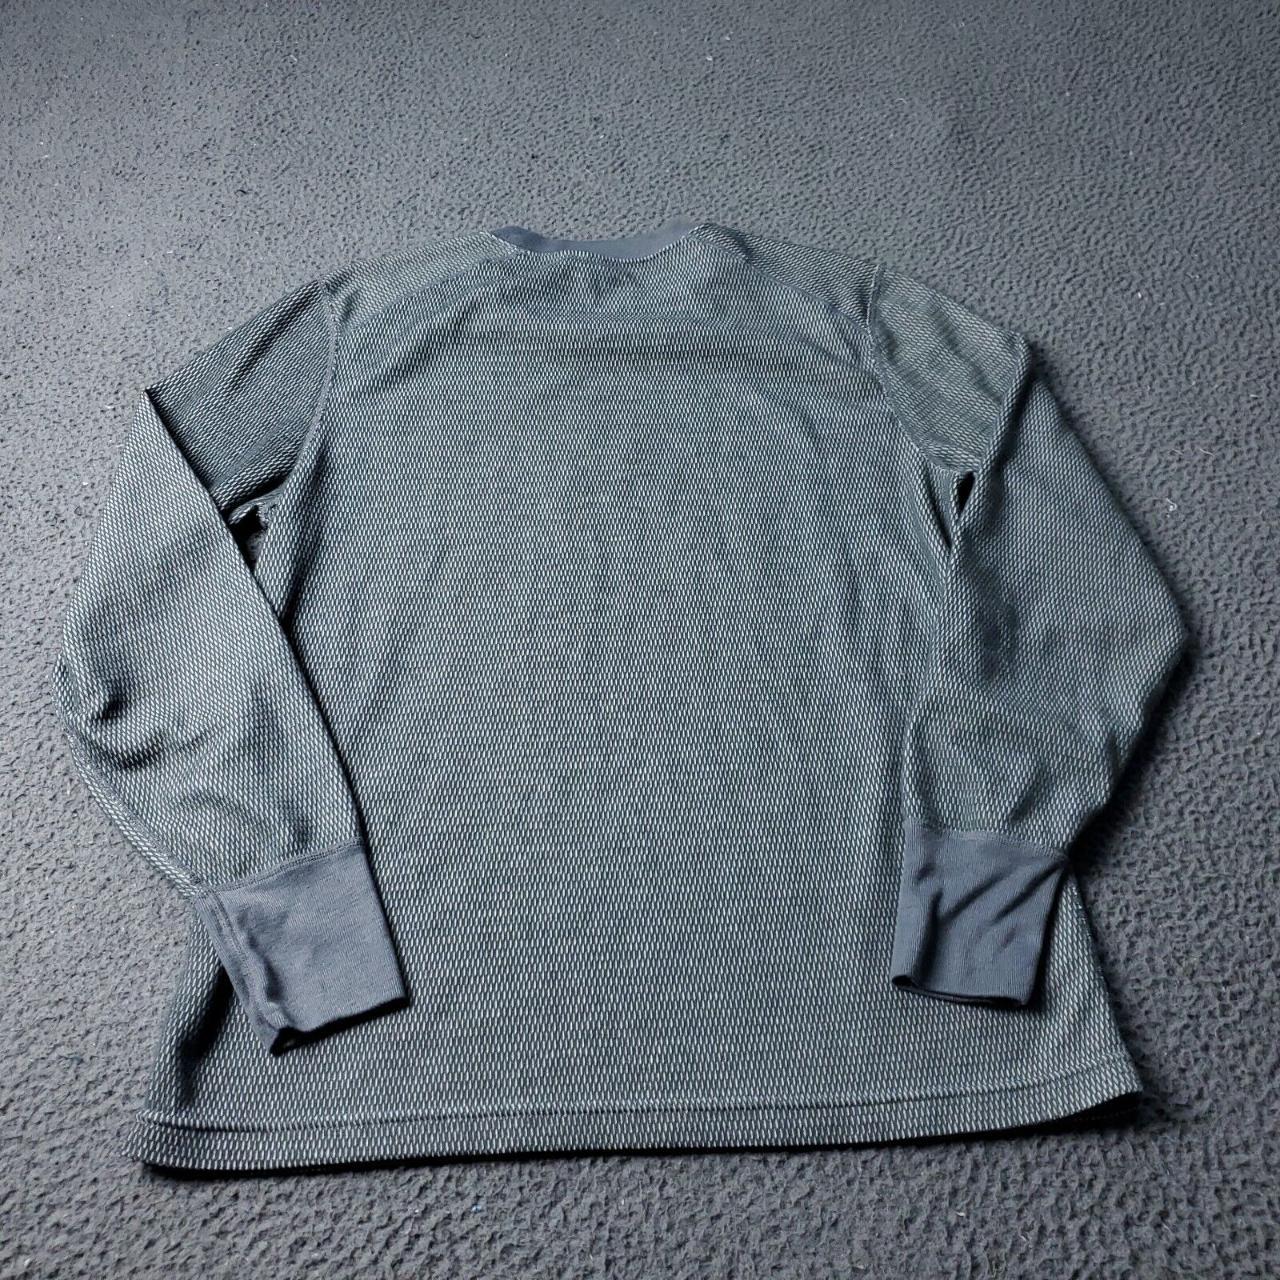 Magellan Outdoor T-Shirt Men's Size XL Long Sleeve - Depop